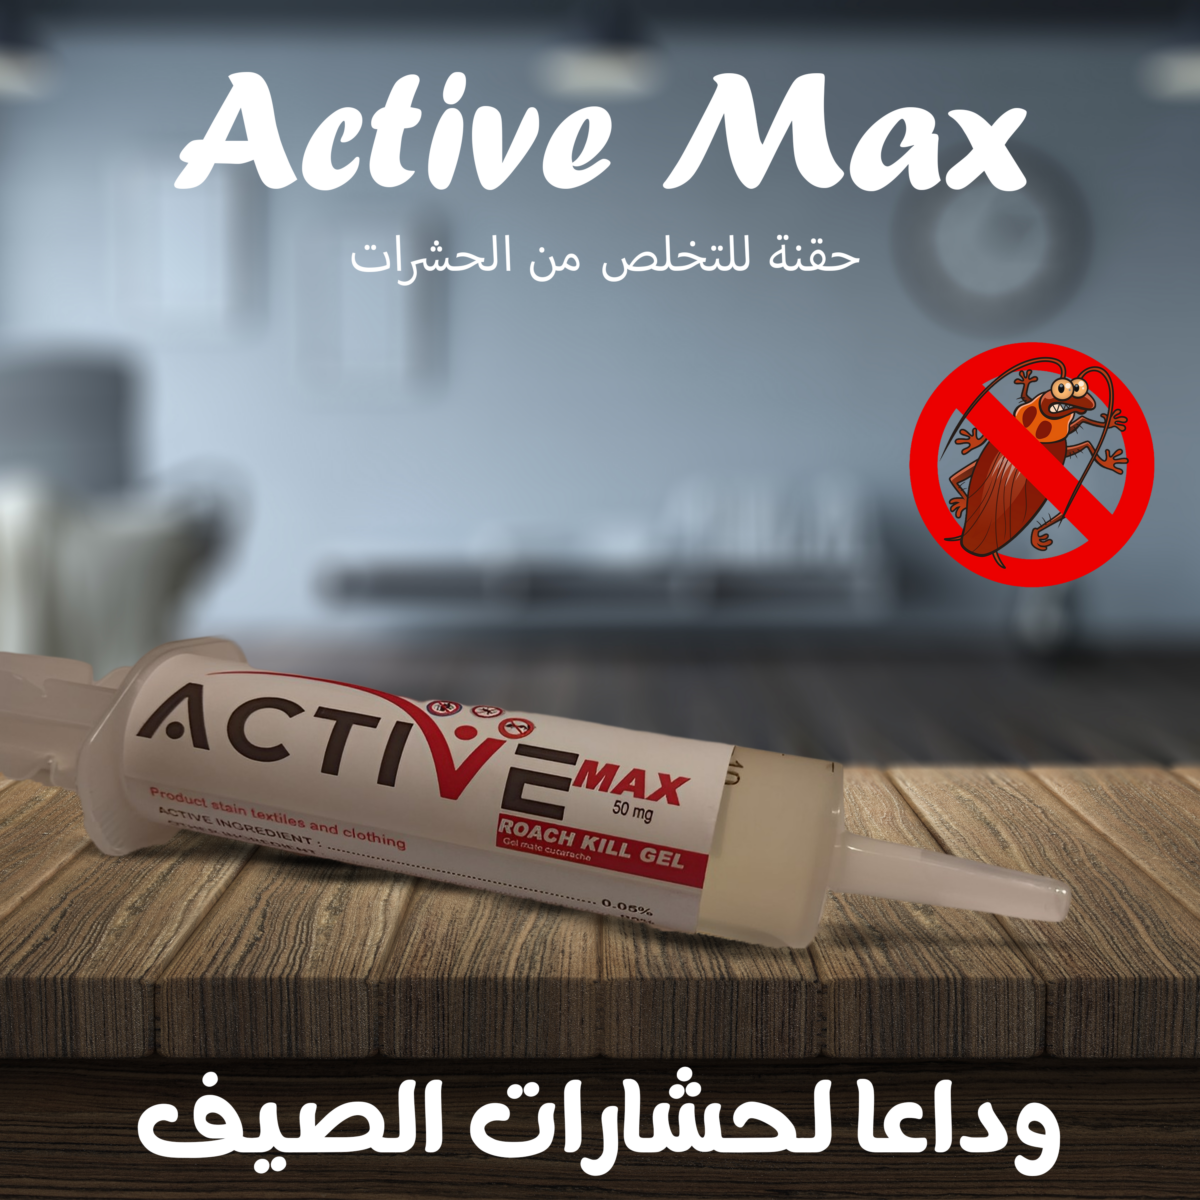 Active Max  معجون القضاء علي لحشرات طويل الأمد